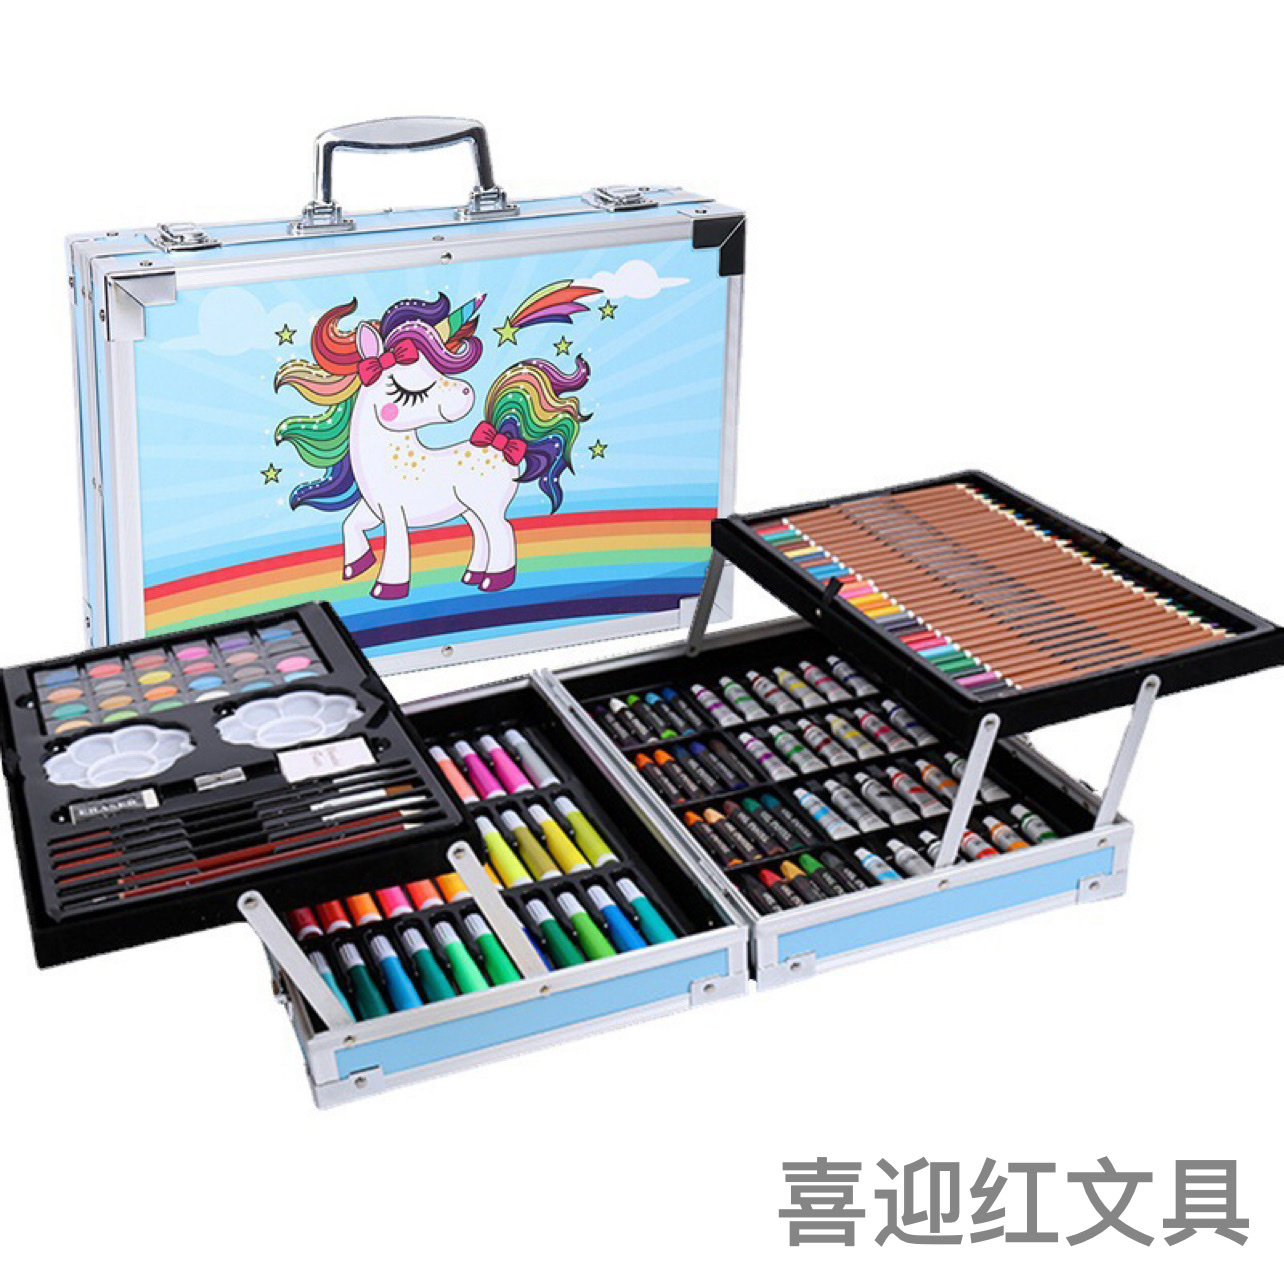 绘画套装/儿童学习用品/水彩笔礼盒产品图